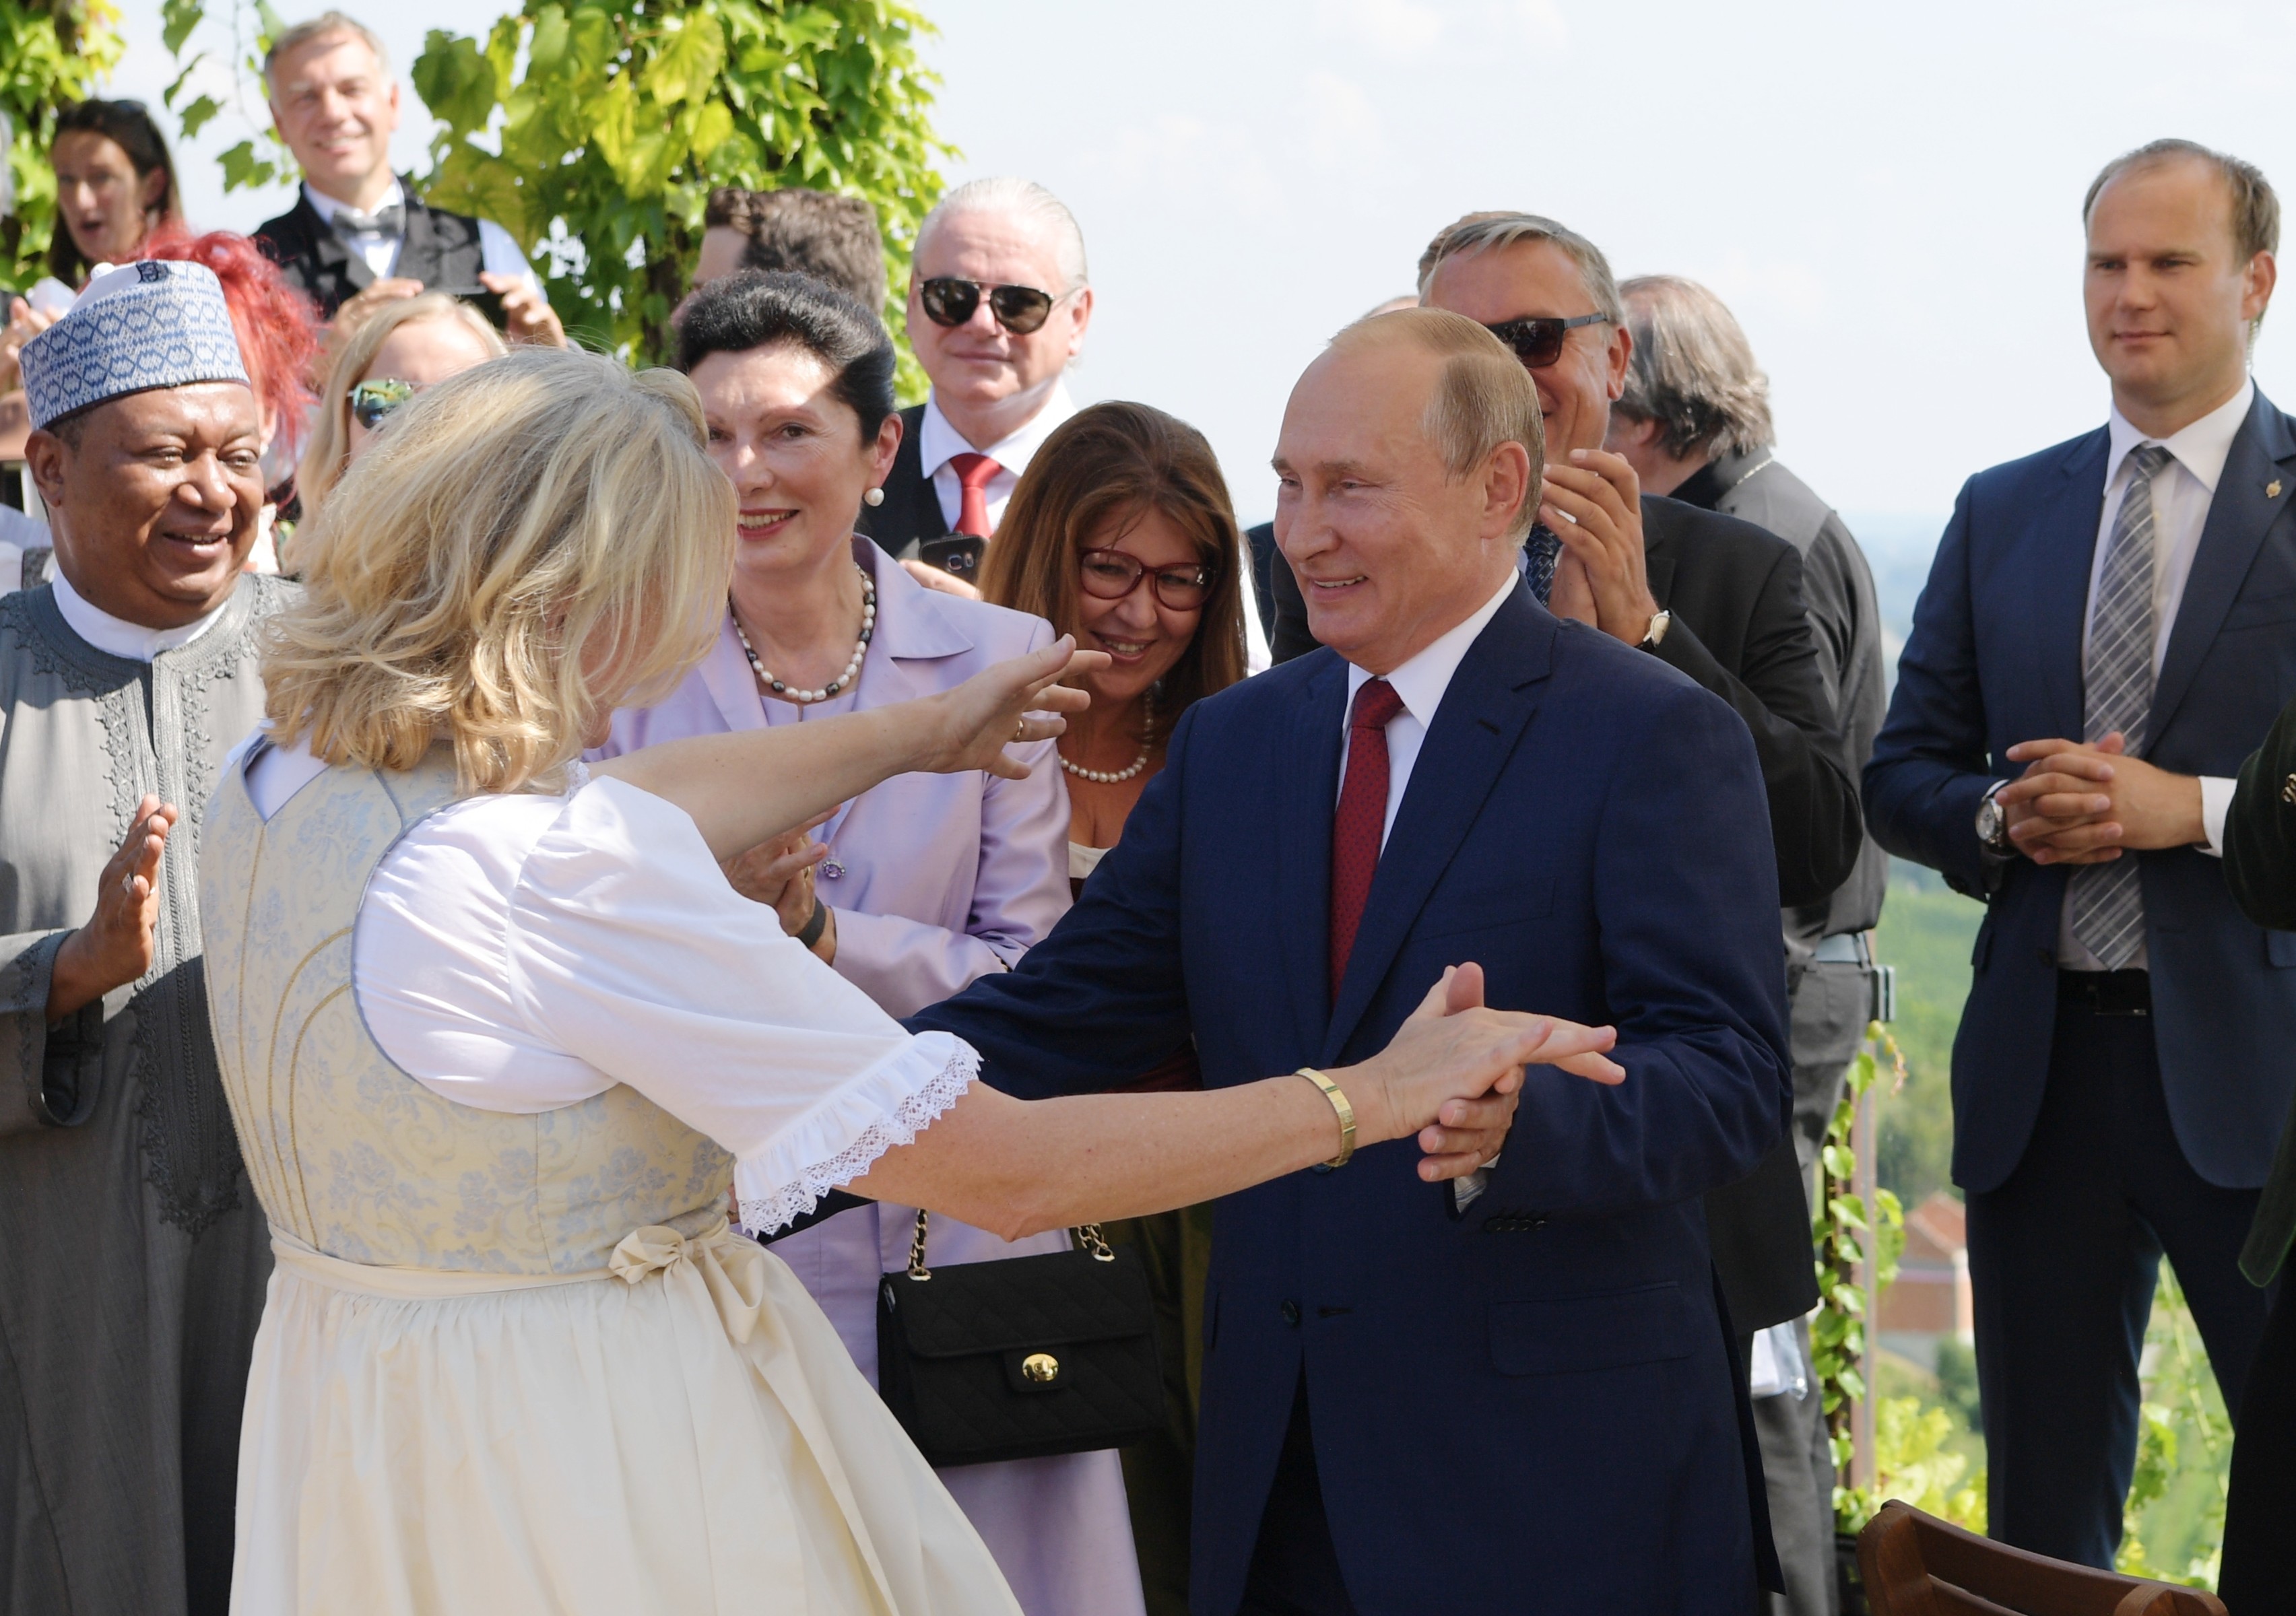 Визит Путина на свадьбу Кнайсль вынудил украинского политика уйти в отставку